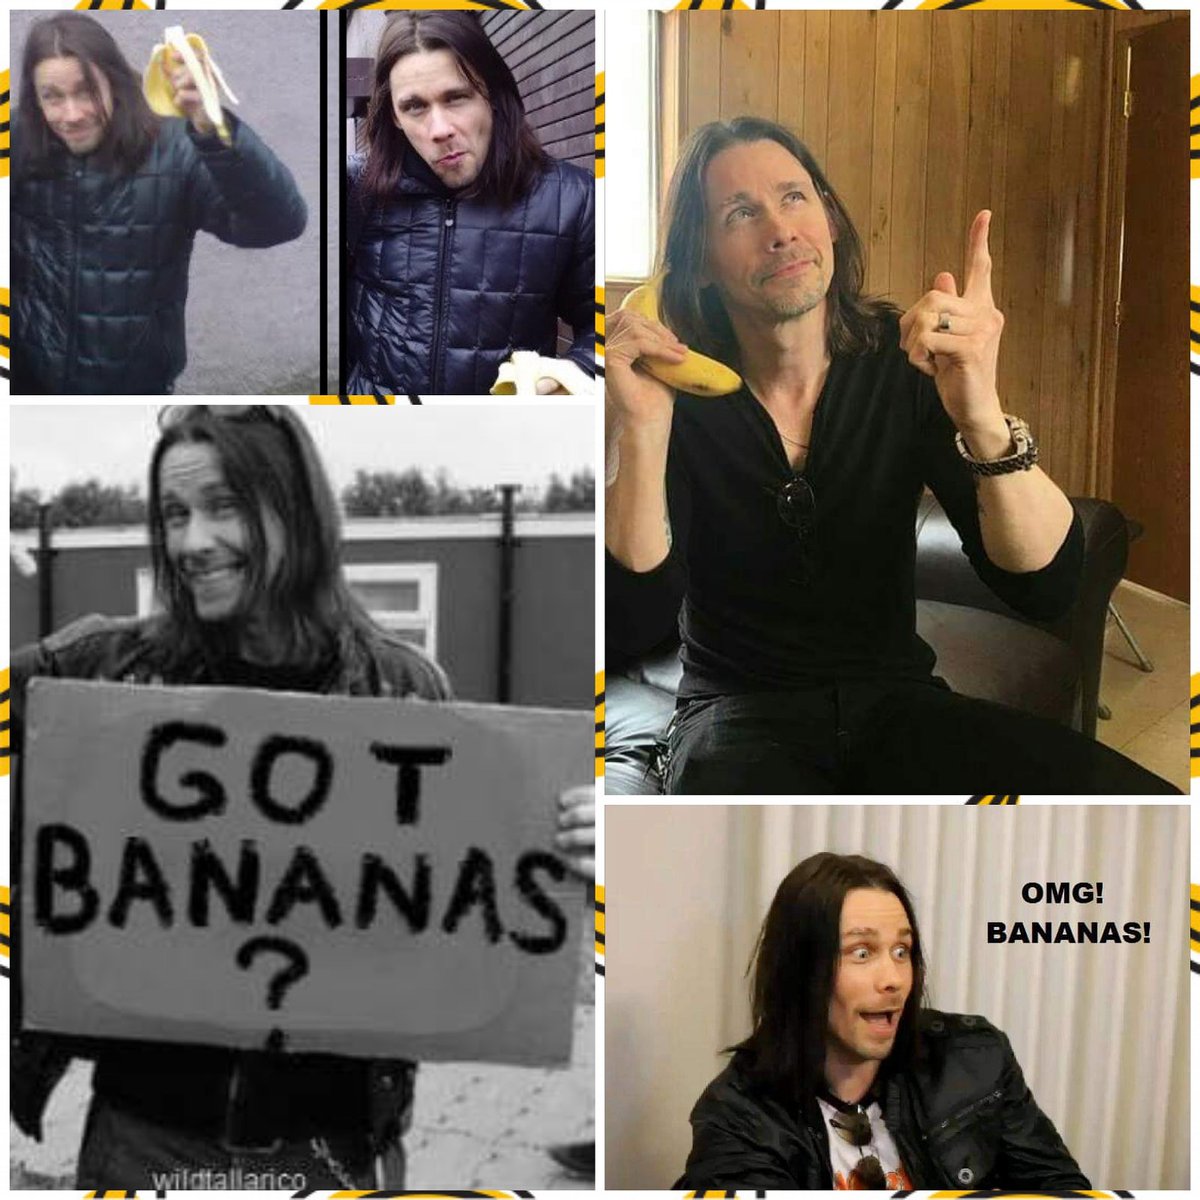 The third Wednesday of the month of April is World Banana Day! 🍌

Happy Banana Day! 🍌

💛🍌💛🍌💛🍌💛🍌💛🍌💛🍌

#banana #bananas #bananaday #worldbananaday #bananamyles #myleskennedy #amievergonnastopdoingthis #ofcoursenot